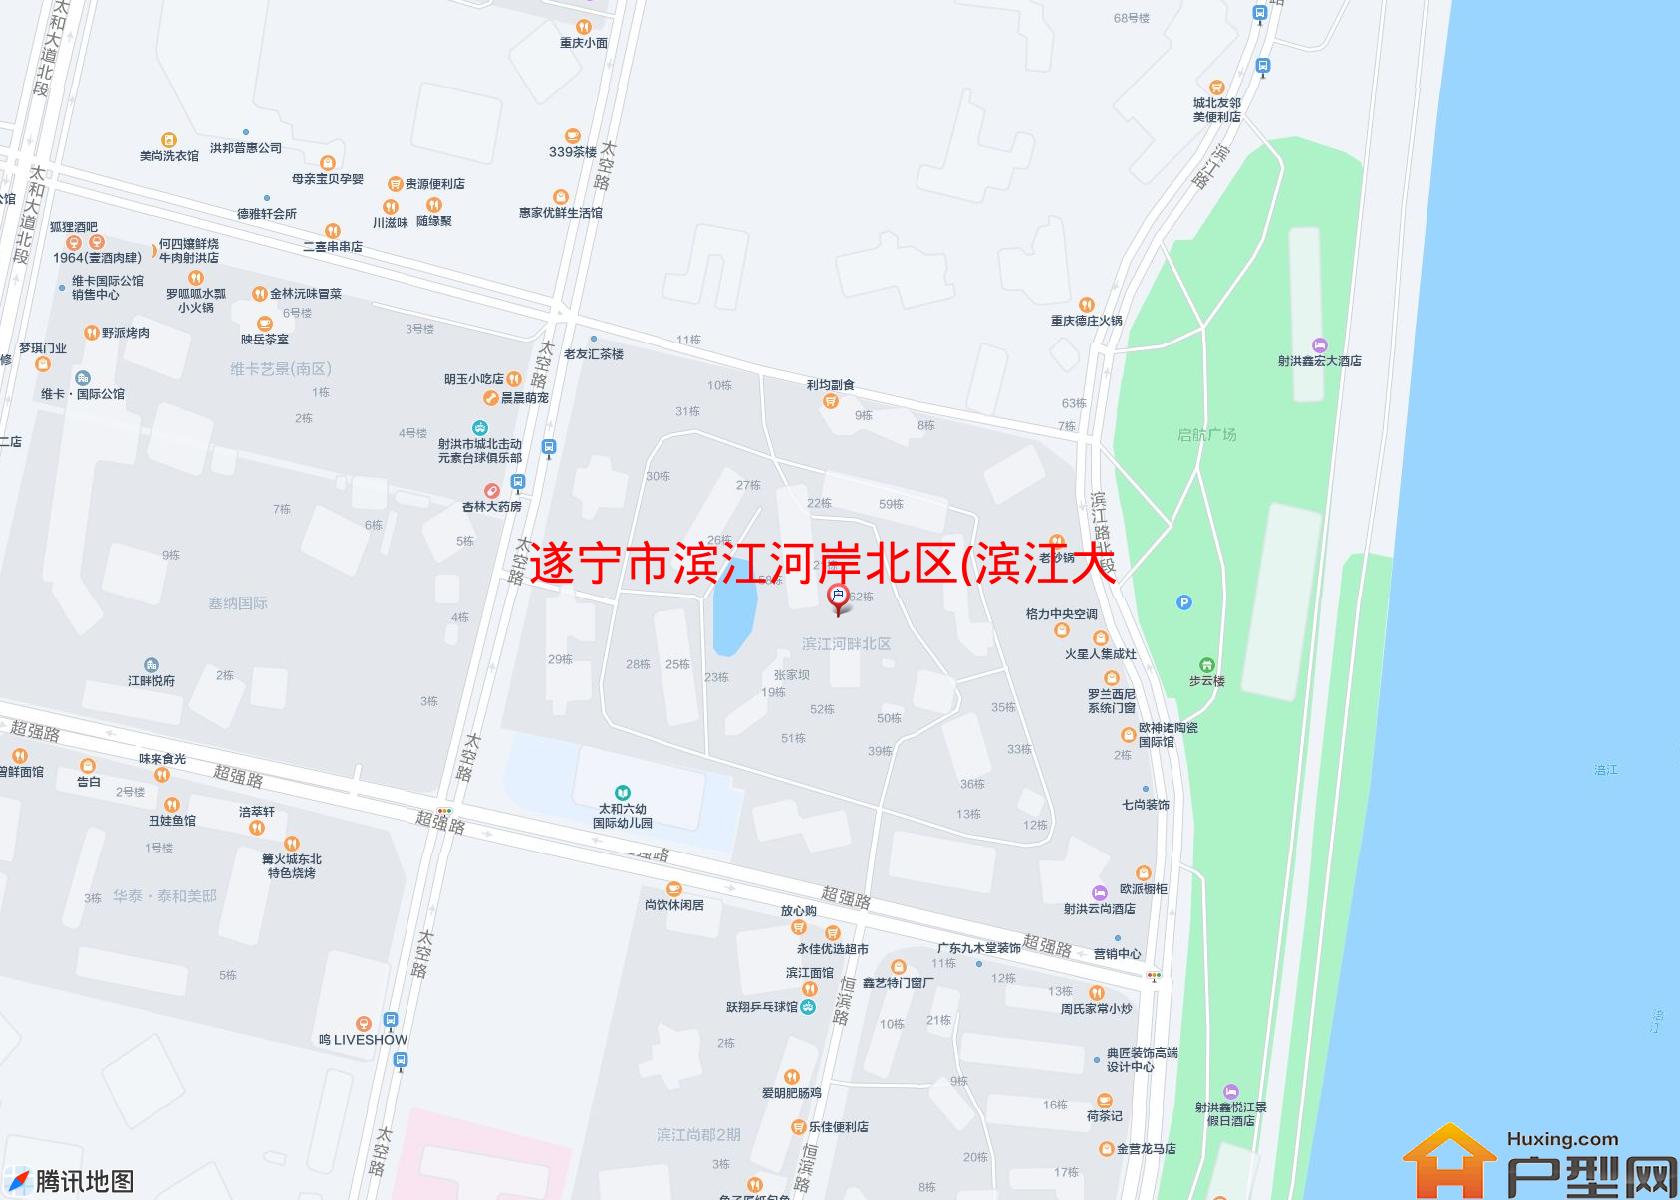 滨江河岸北区(滨江大道,近超强路)小区 - 户型网